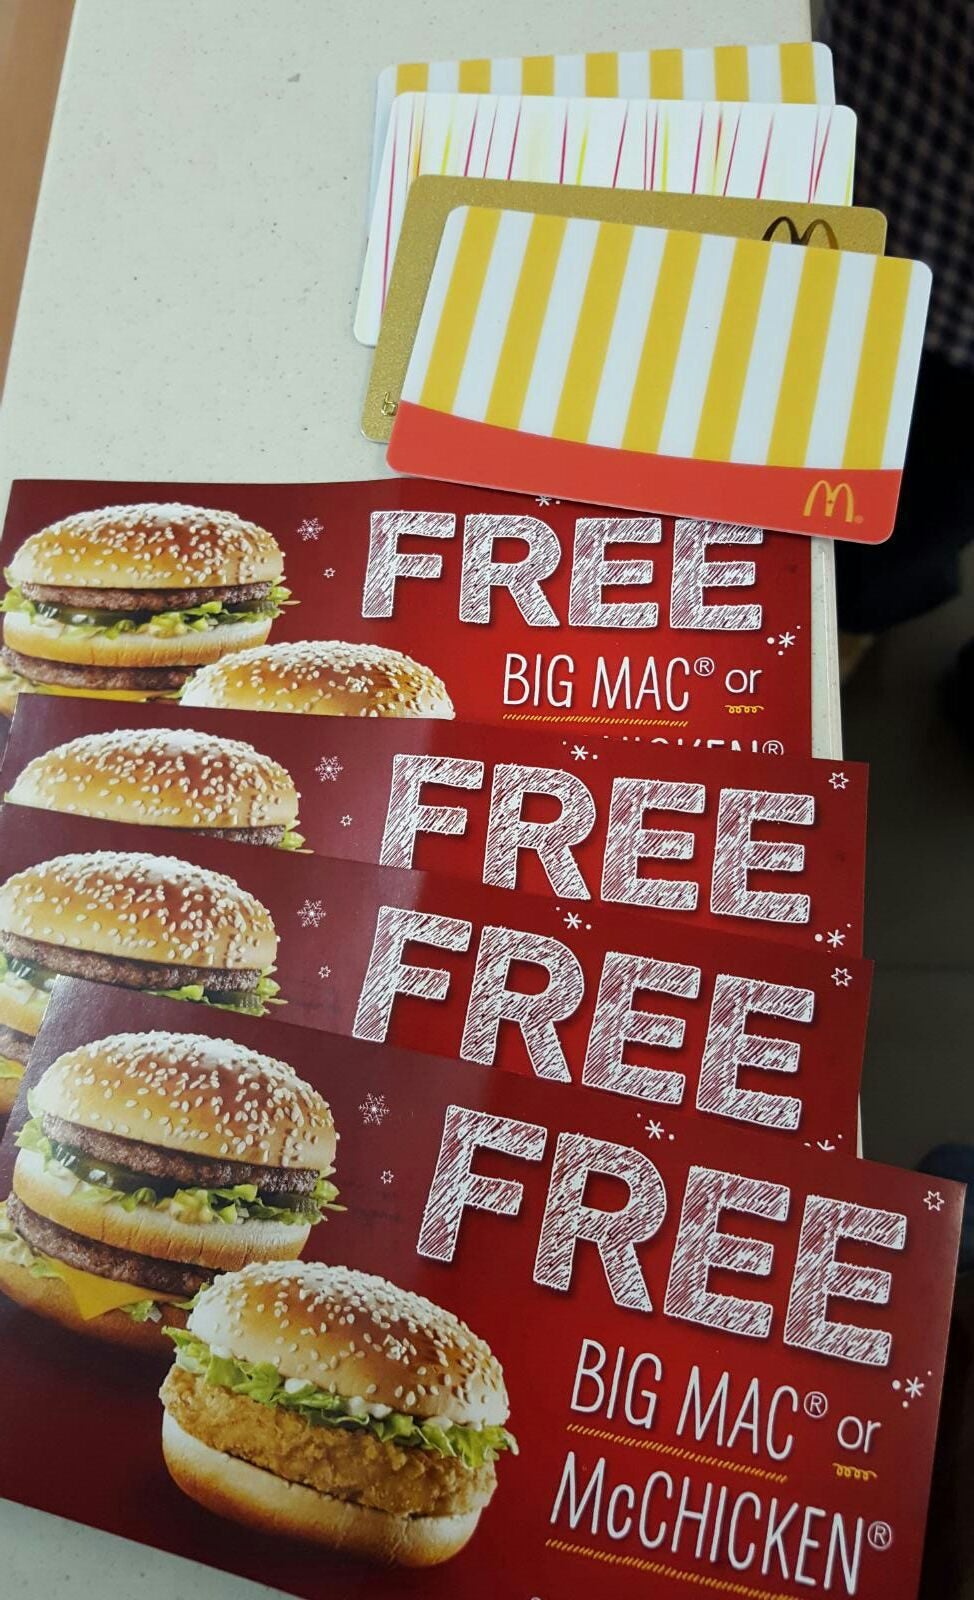 mcdonalds 2 for 5 big mac coupon